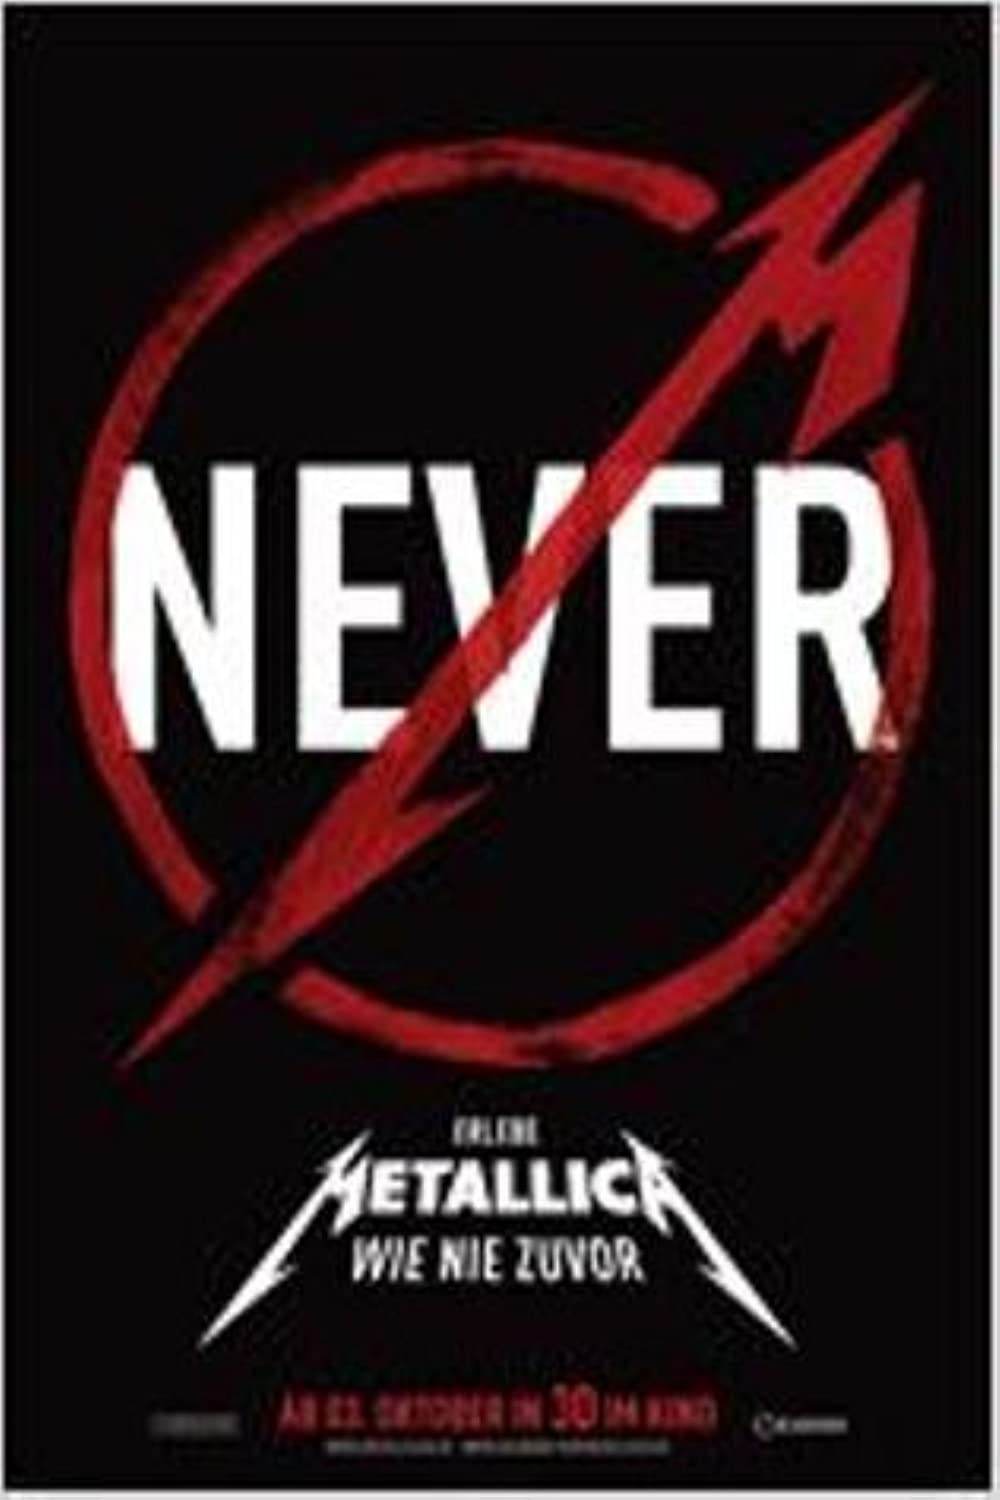 Filmbeschreibung zu Metallica Through the Never